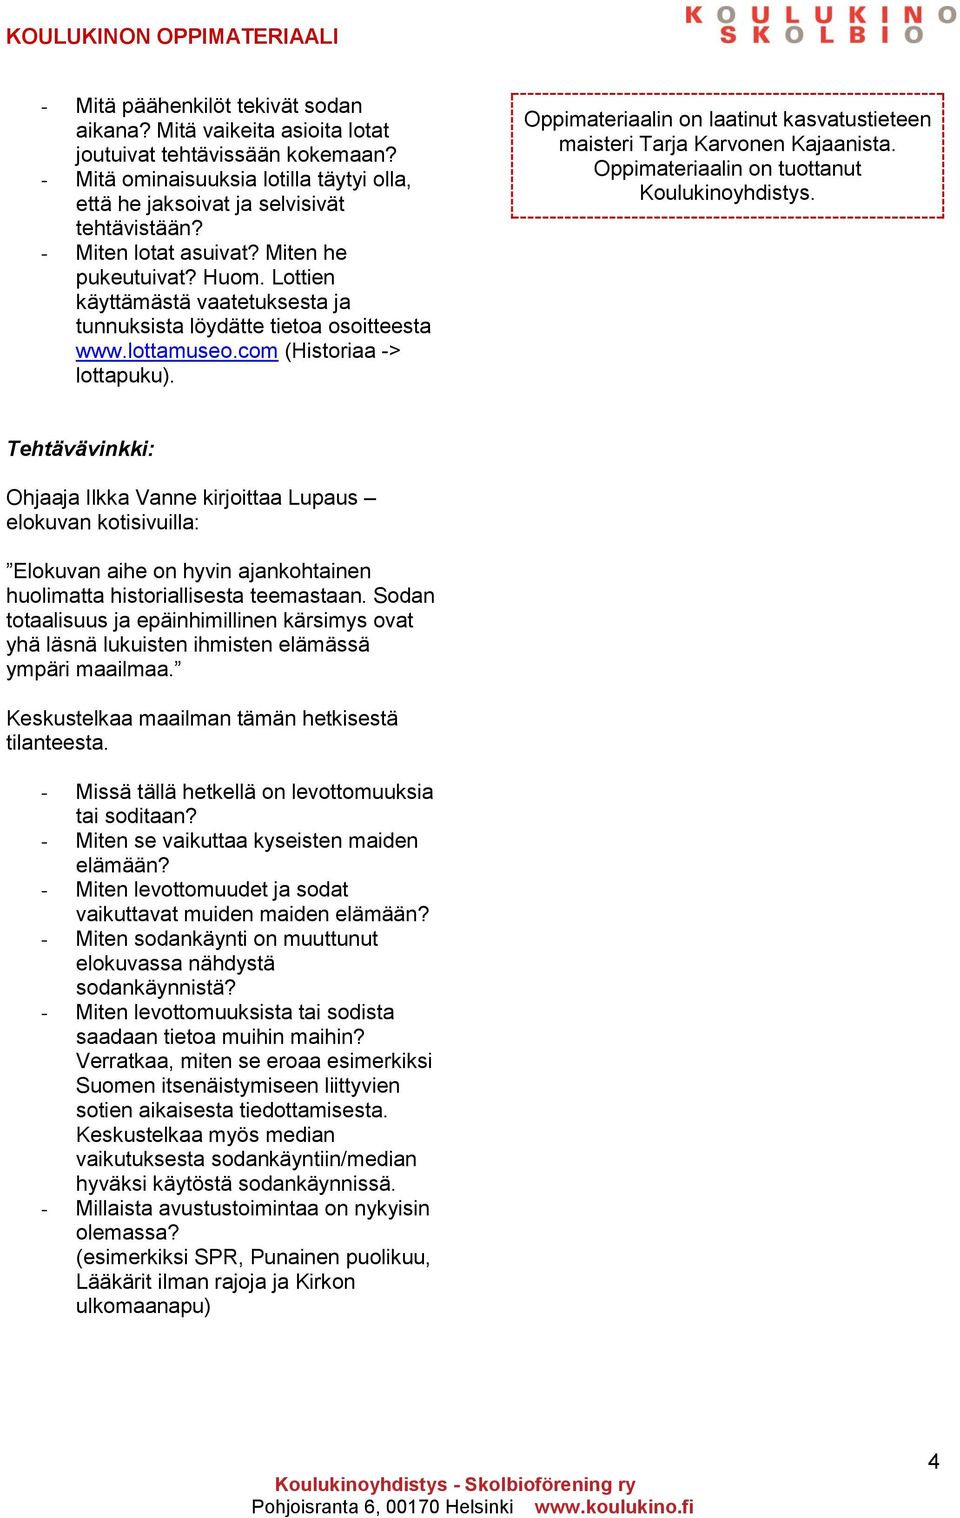 Oppimateriaalin on laatinut kasvatustieteen maisteri Tarja Karvonen Kajaanista. Oppimateriaalin on tuottanut Koulukinoyhdistys.